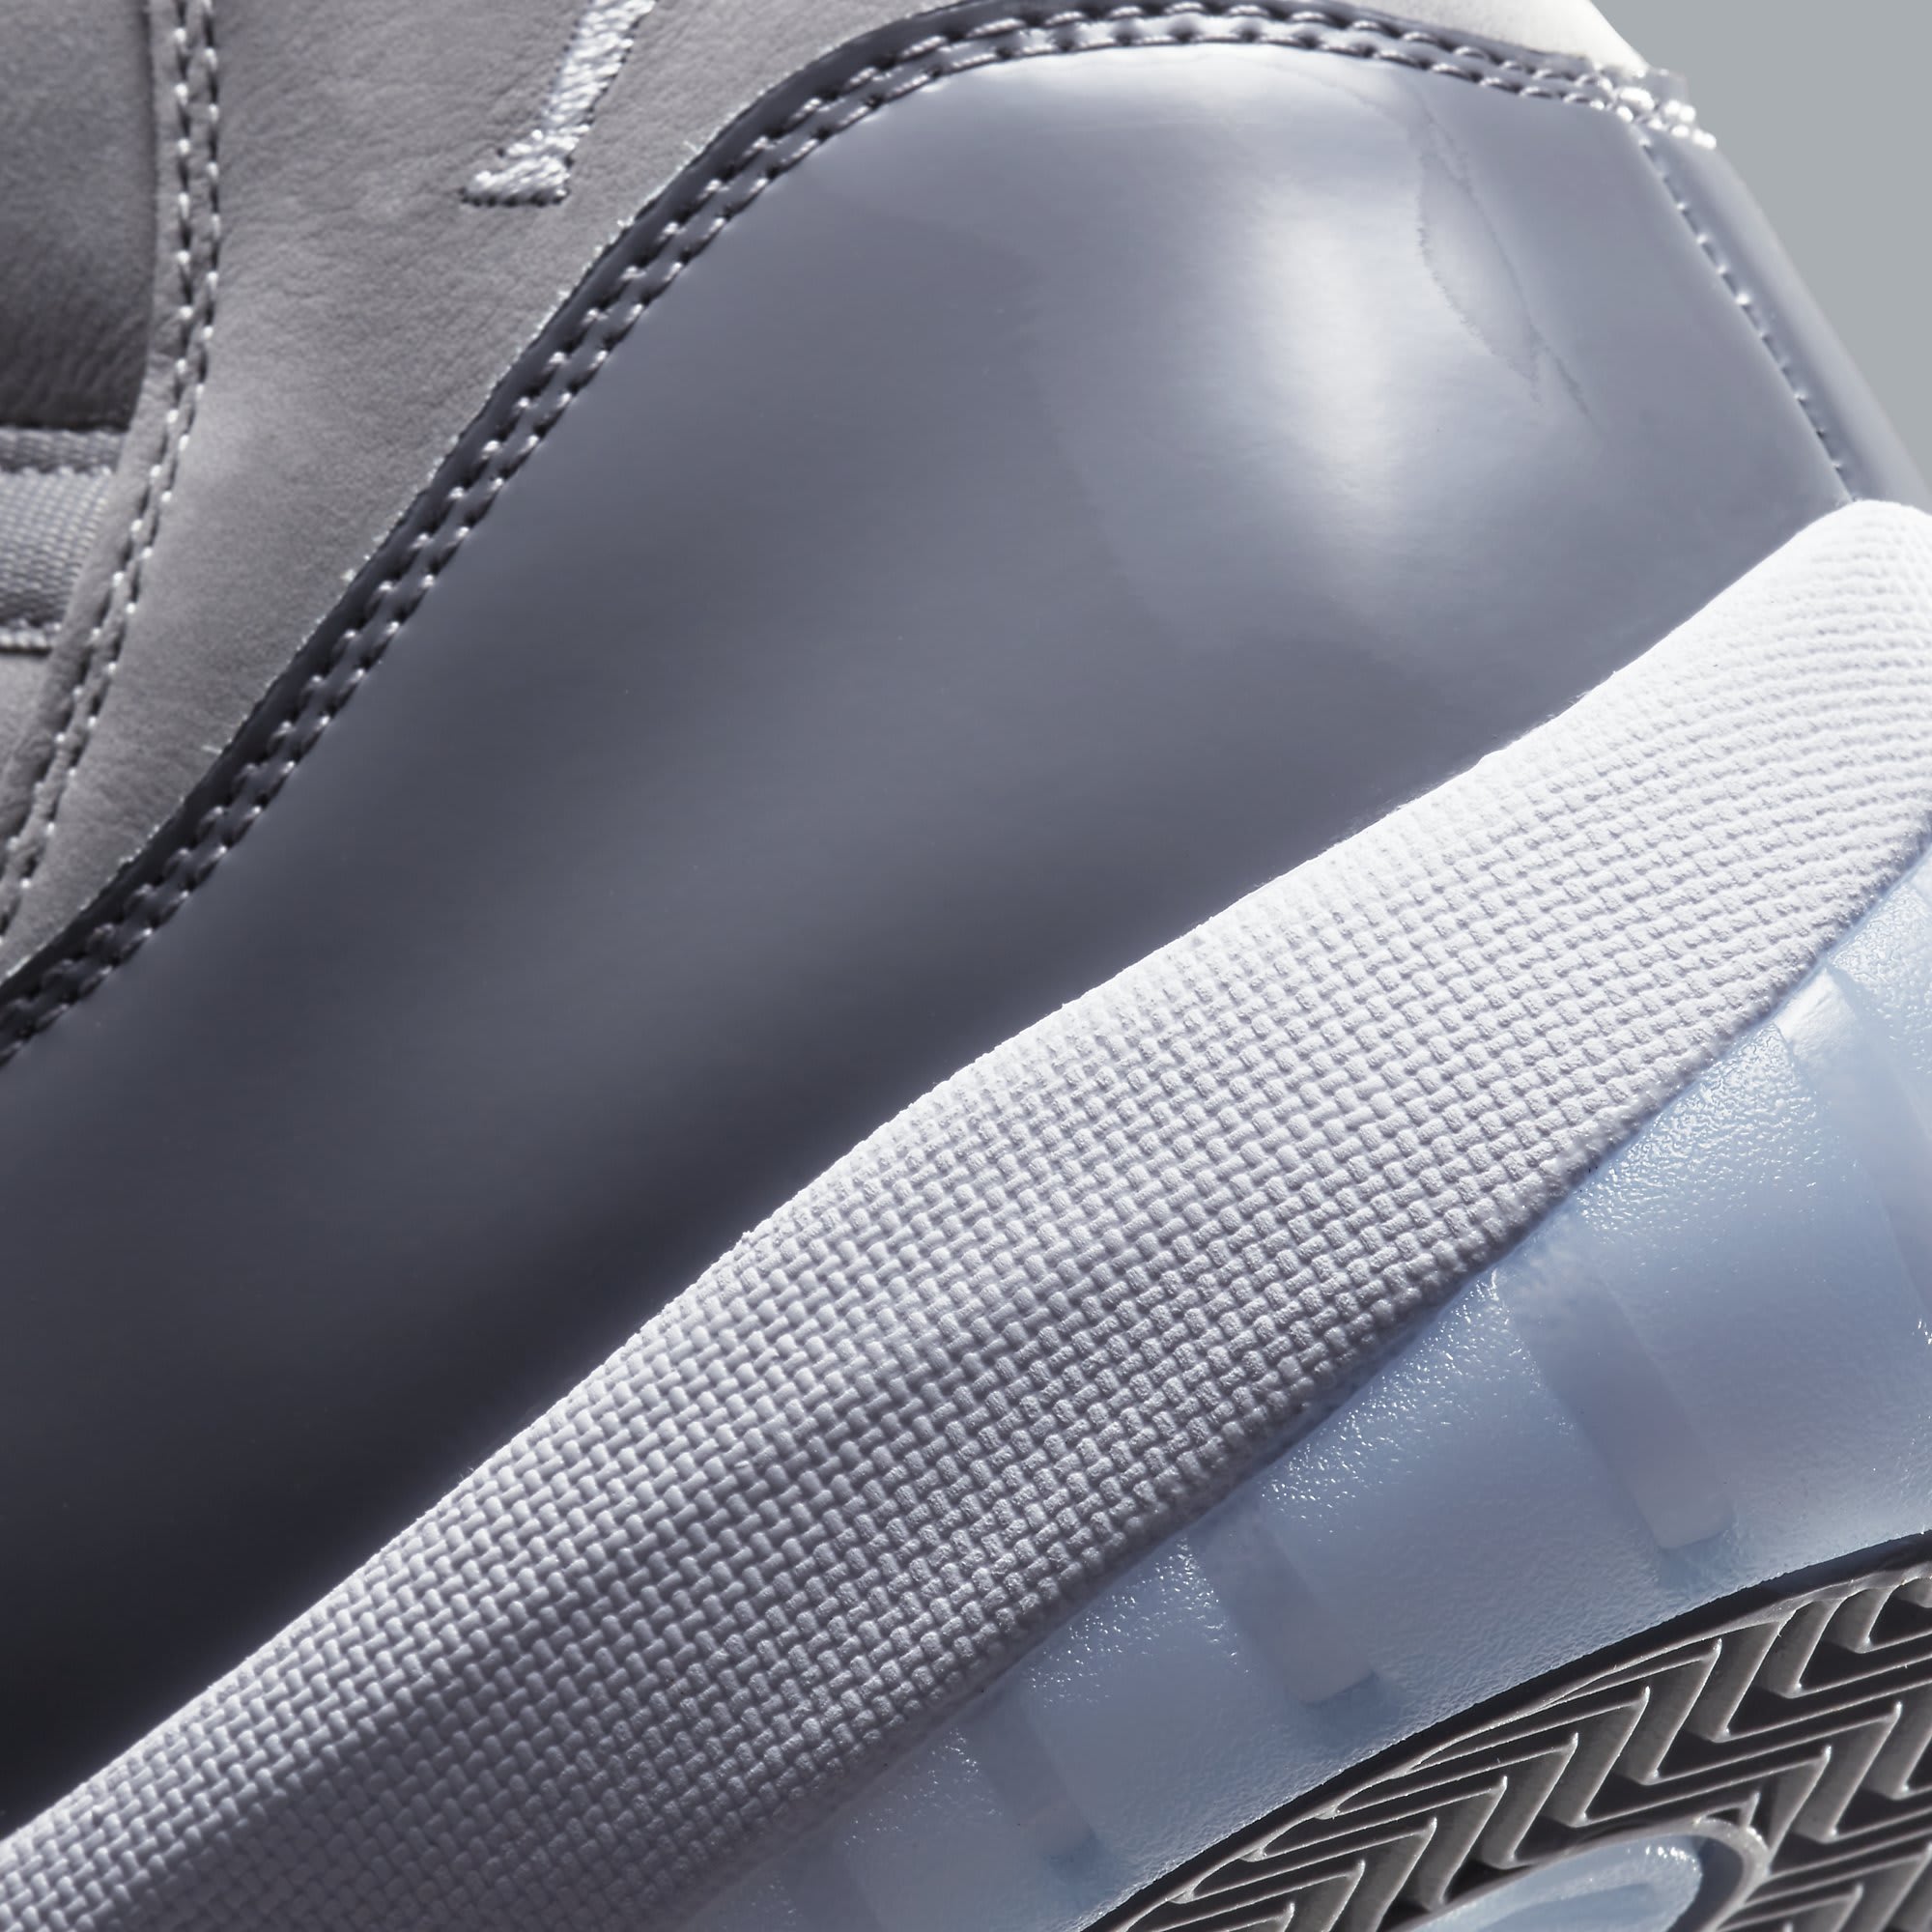 Air Jordan 11 XI Cool Grey Release Date CT8012-005 Heel Detail